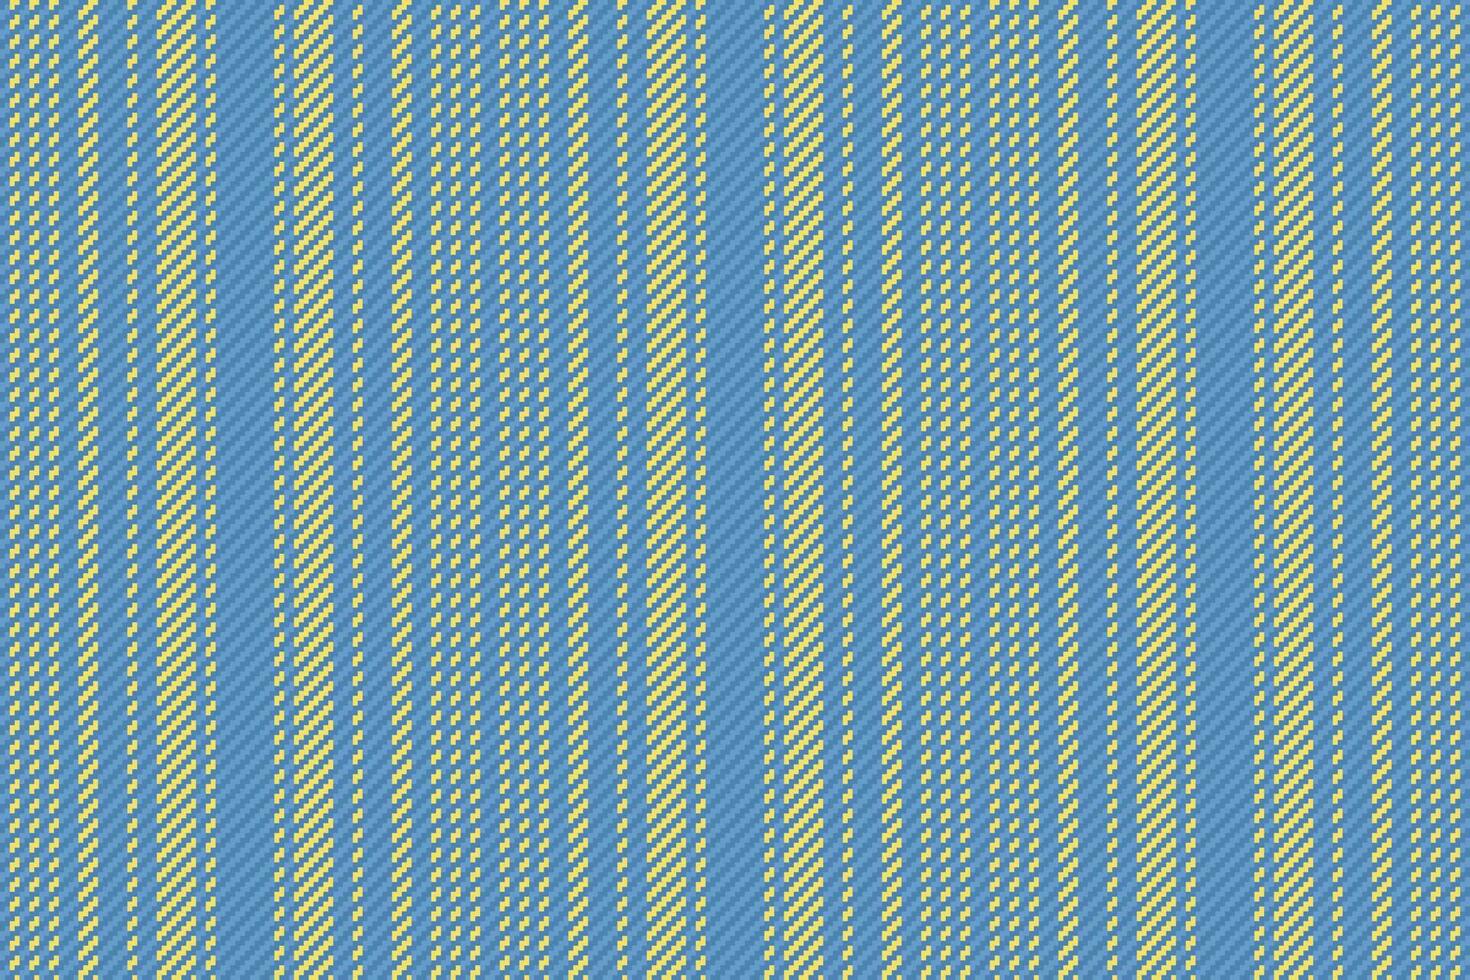 Vertikale Streifen Muster. Stoff Textil- Linien. Hintergrund nahtlos Vektor Textur.